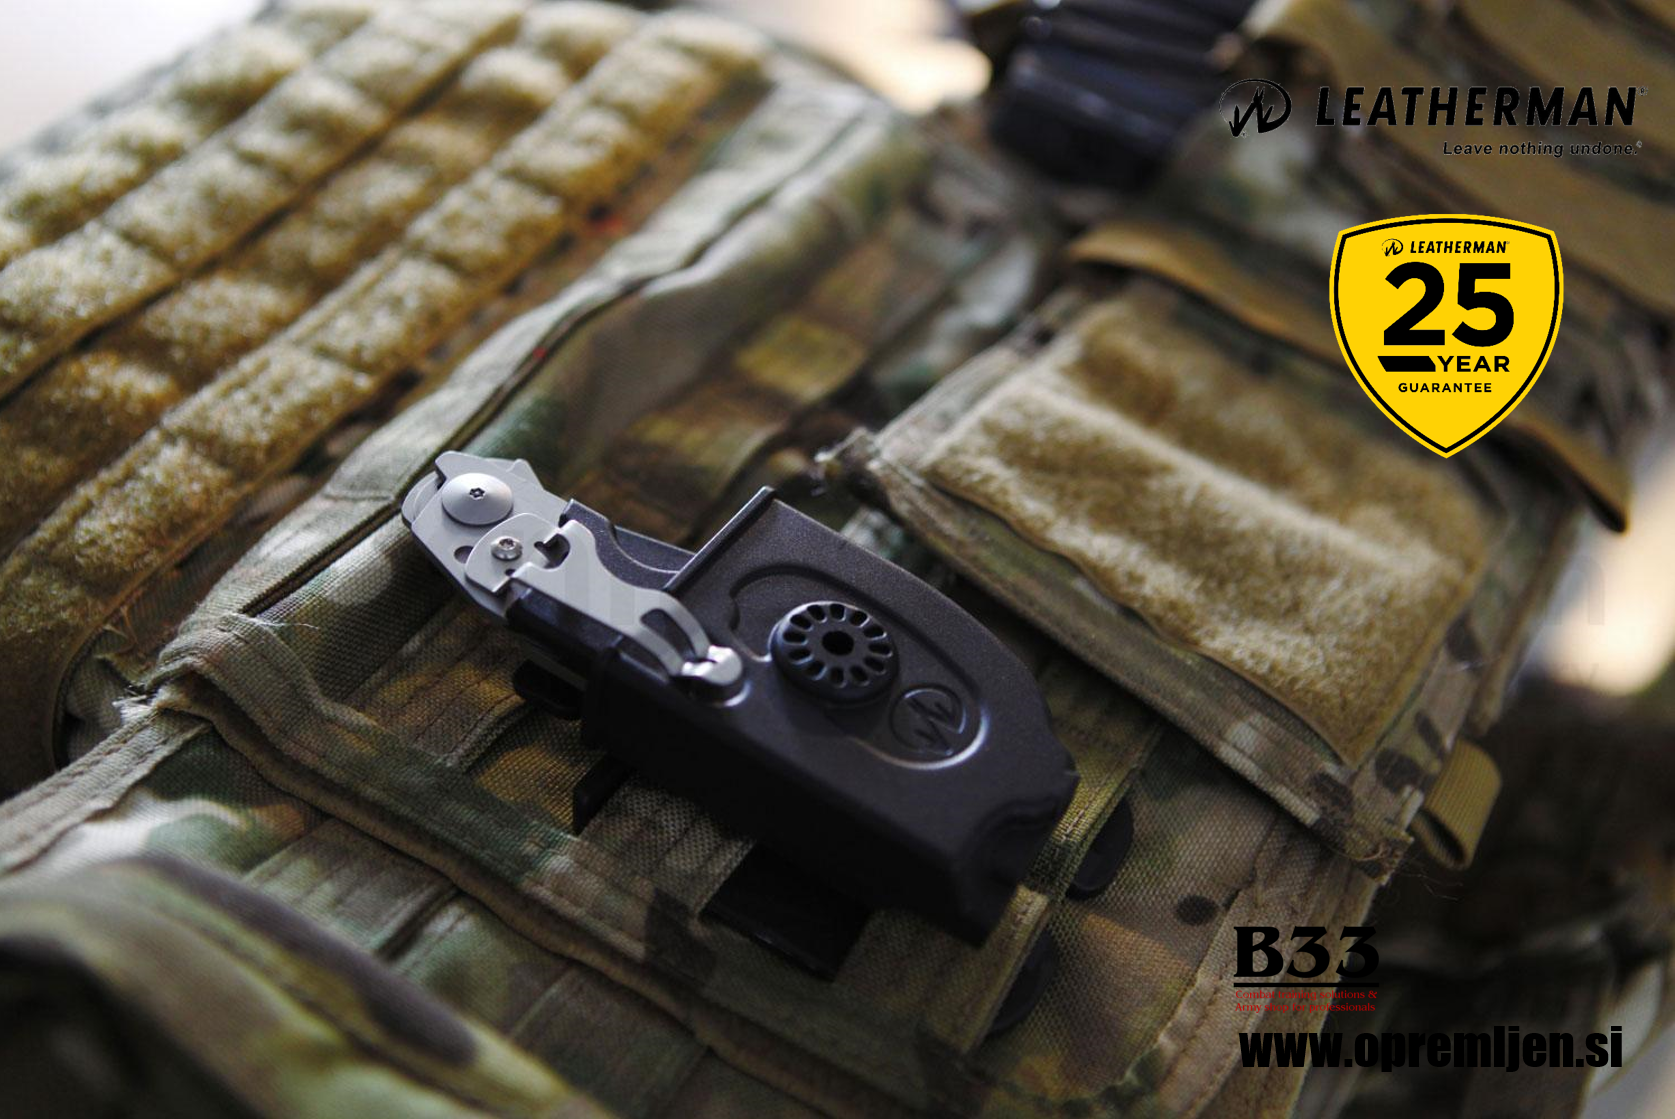 B33 army shop - Leatherman - Raptor Medicinske škarje iz nerjavečega jekla 420HC by B33 army shop at www.opremljen.si, trgovina z vojaško opremo, vojaška oprema